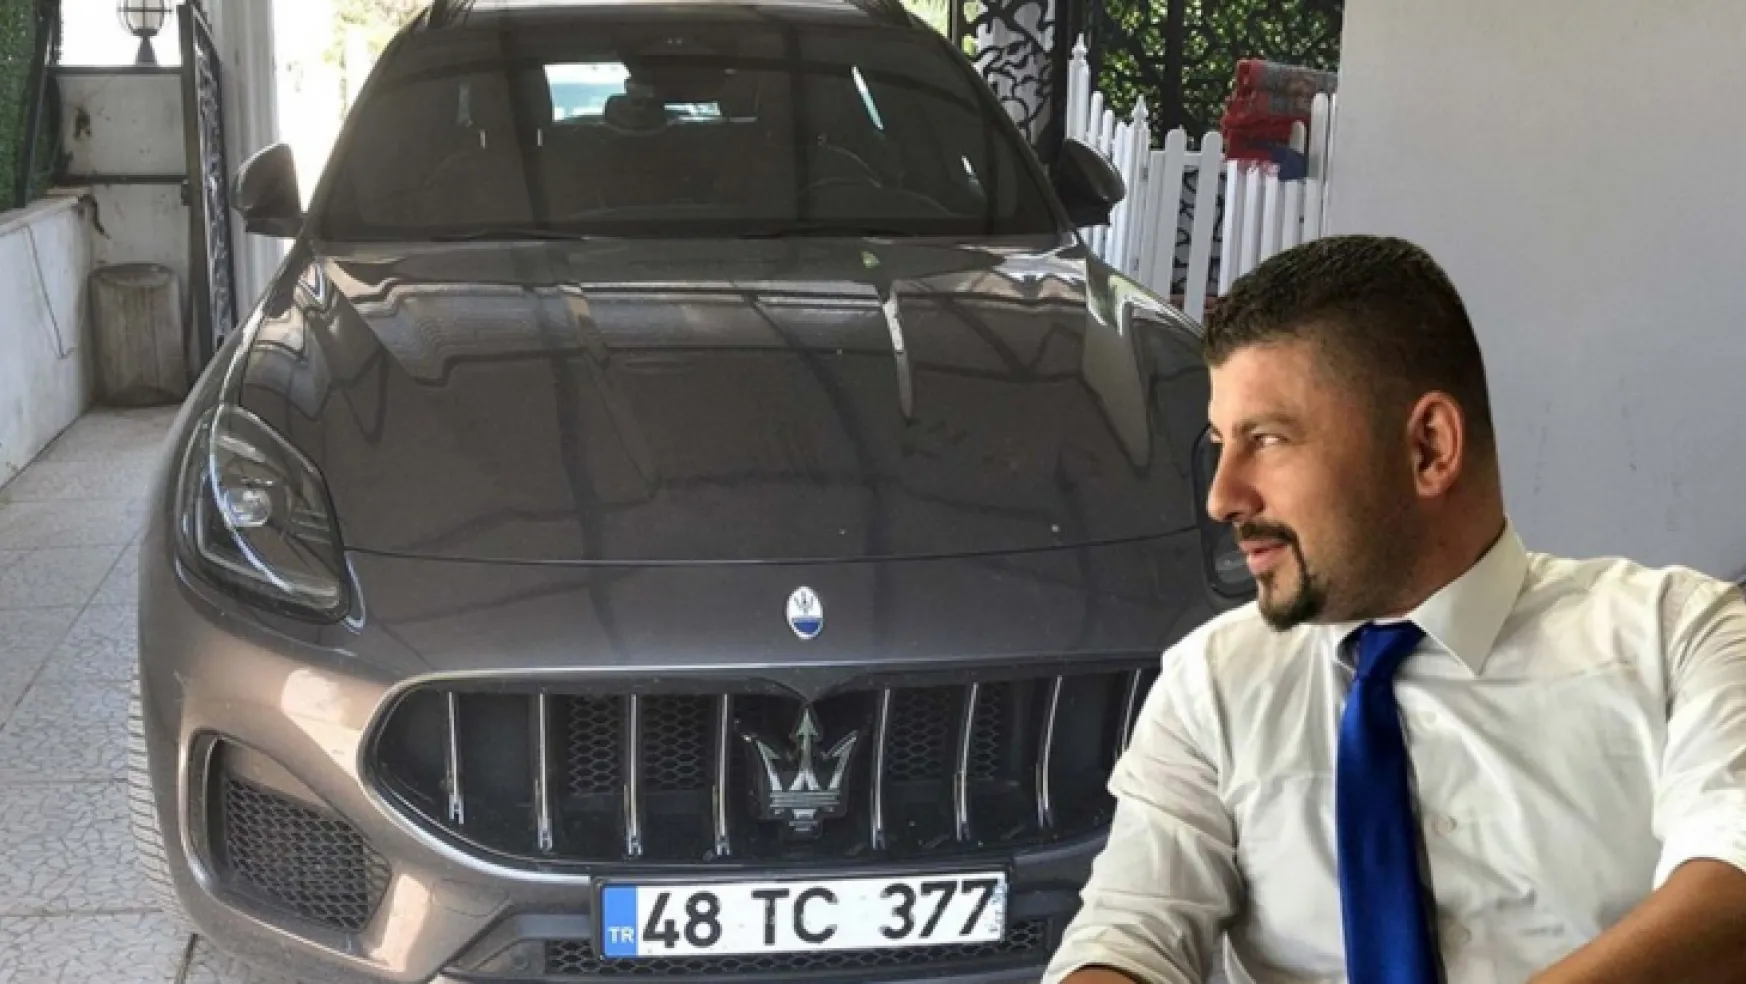 Maseratili polis memuru otomobilinde ölü bulundu